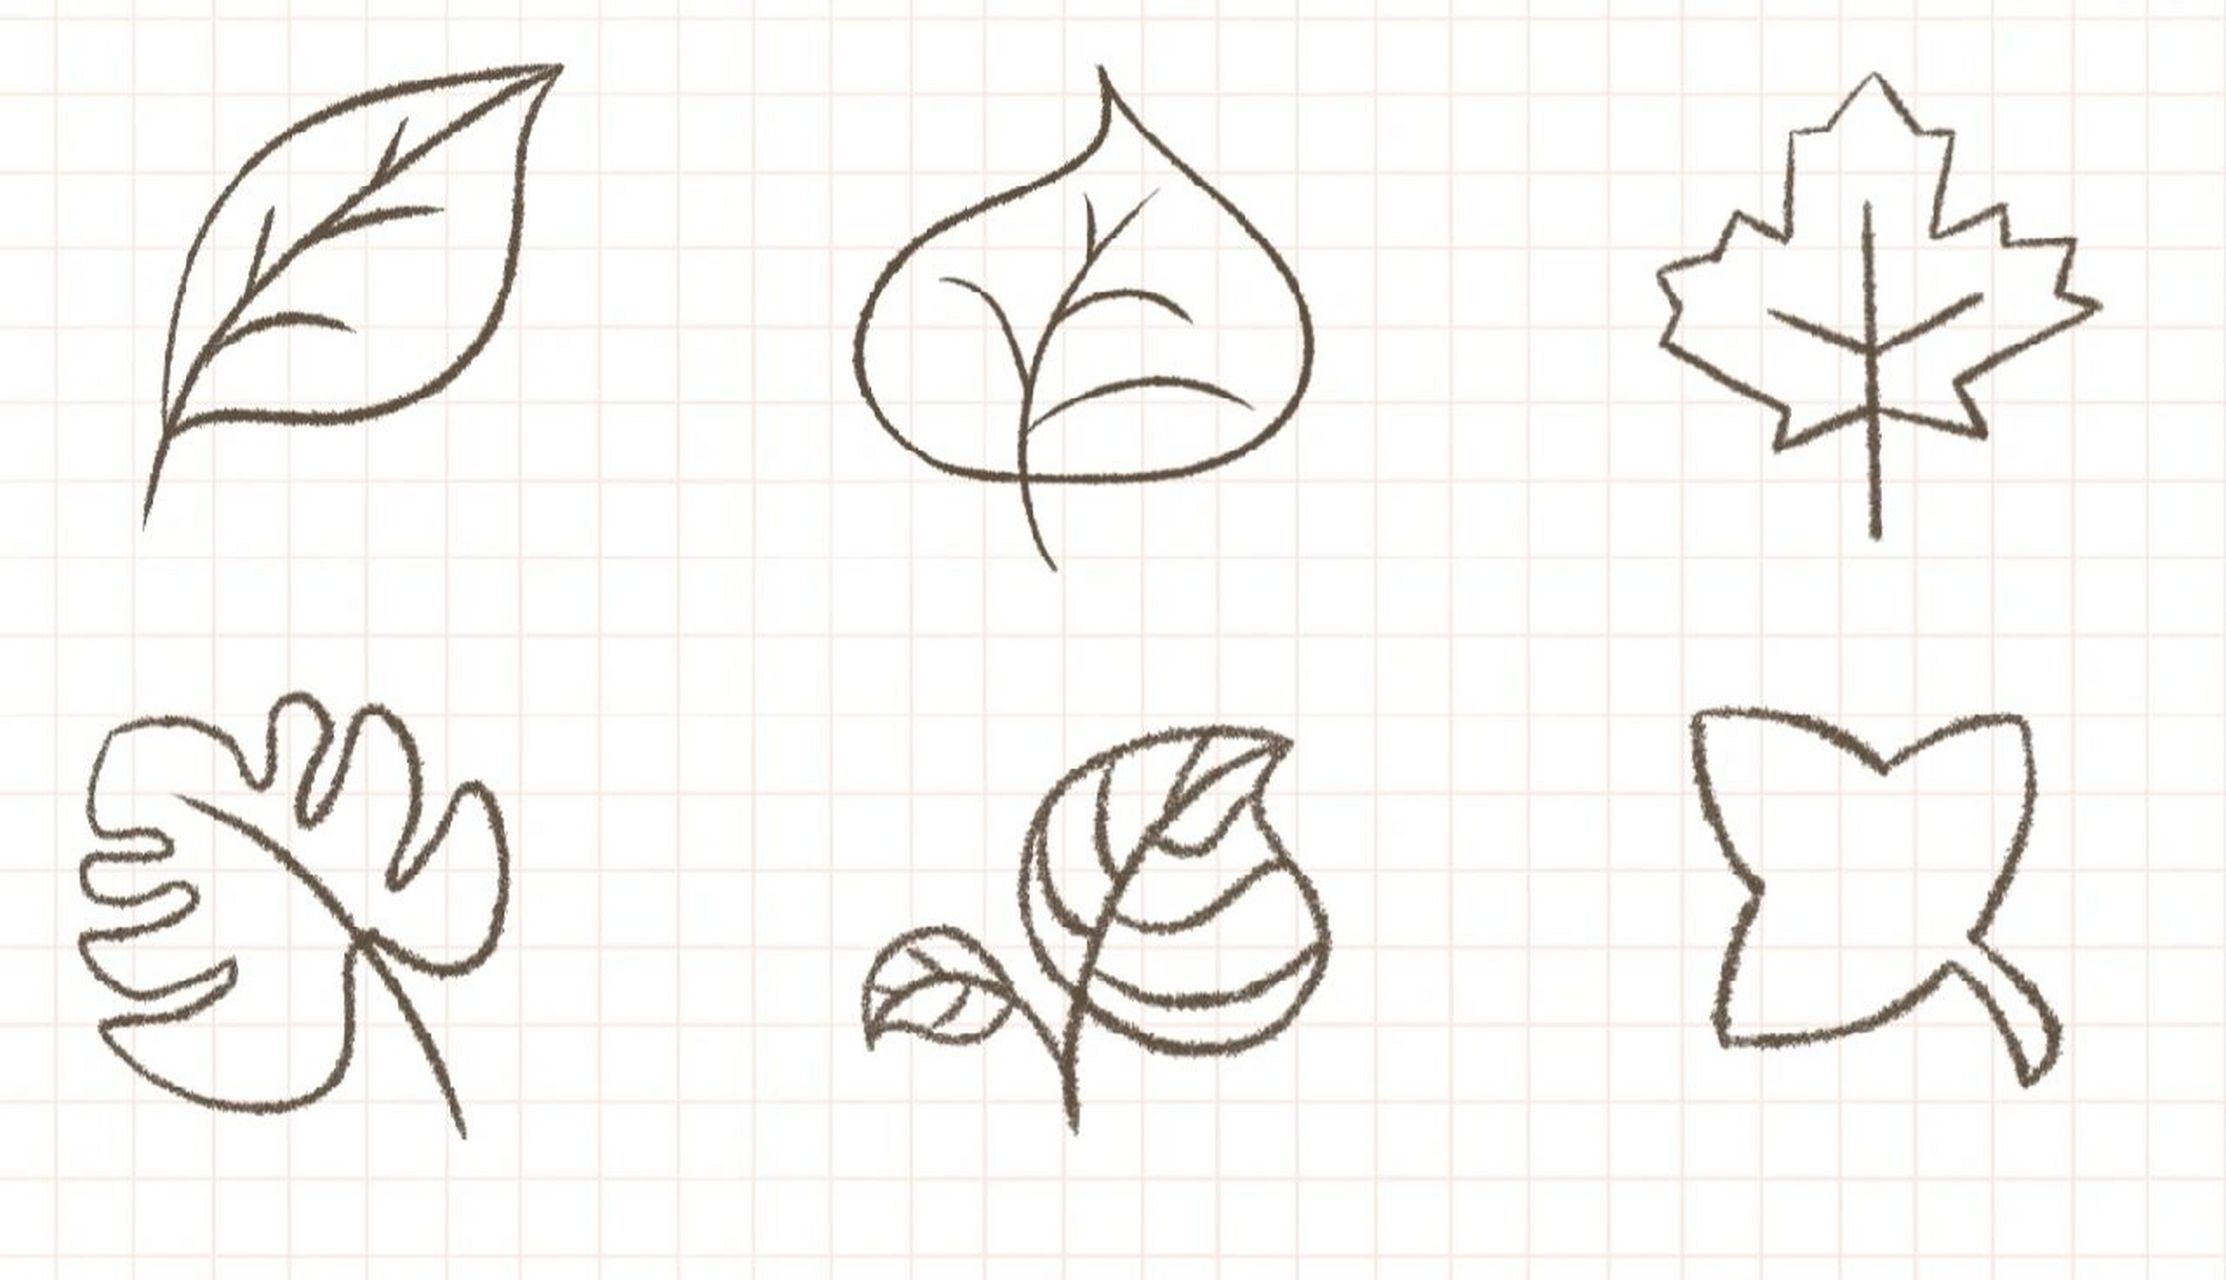 各种叶子简笔画简单图片